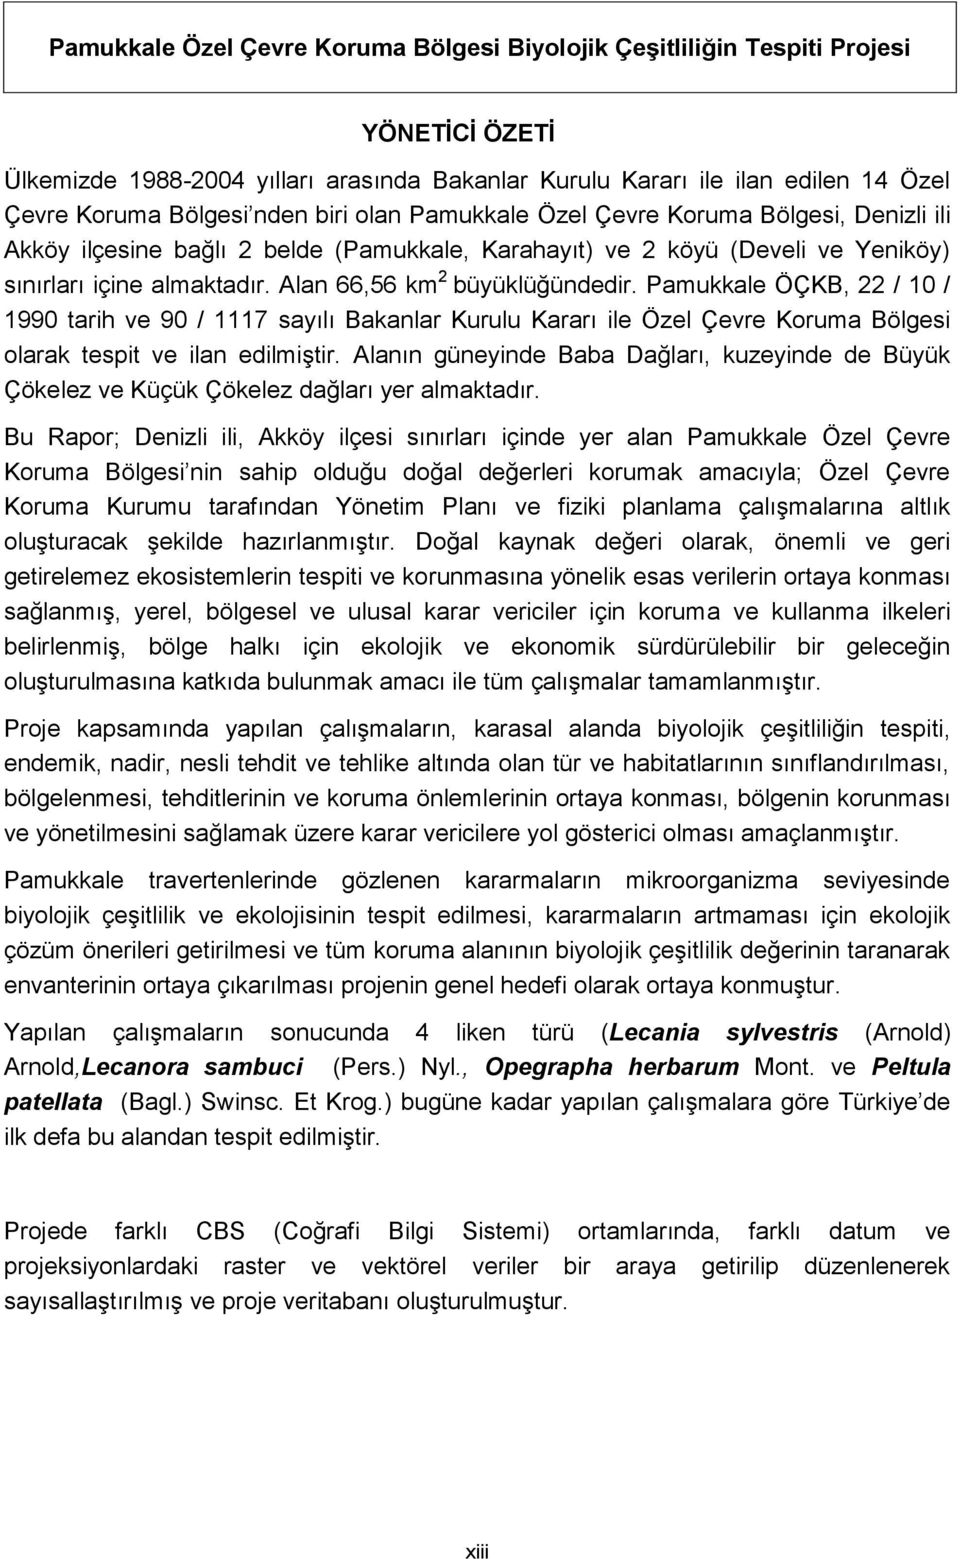 Pamukkale ÖÇKB, 22 / 10 / 1990 tarih ve 90 / 1117 sayılı Bakanlar Kurulu Kararı ile Özel Çevre Koruma Bölgesi olarak tespit ve ilan edilmiştir.